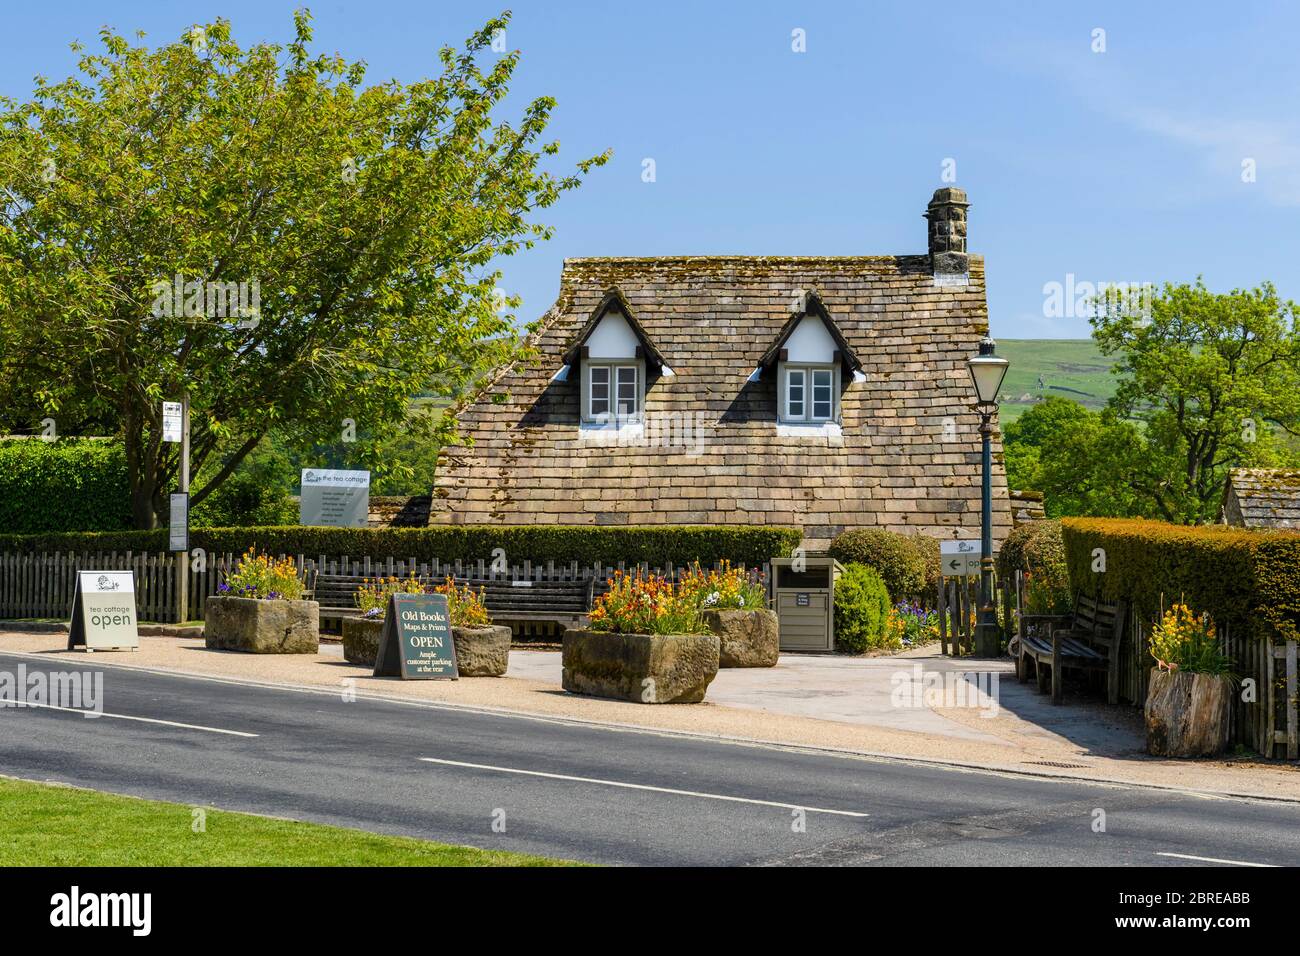 Extérieur de pittoresque et attrayant cottage historique thé café, dans le pittoresque village rural ensoleillé (arrêt de bus) - Bolton Abbey, Yorkshire Dales, Angleterre, Royaume-Uni. Banque D'Images